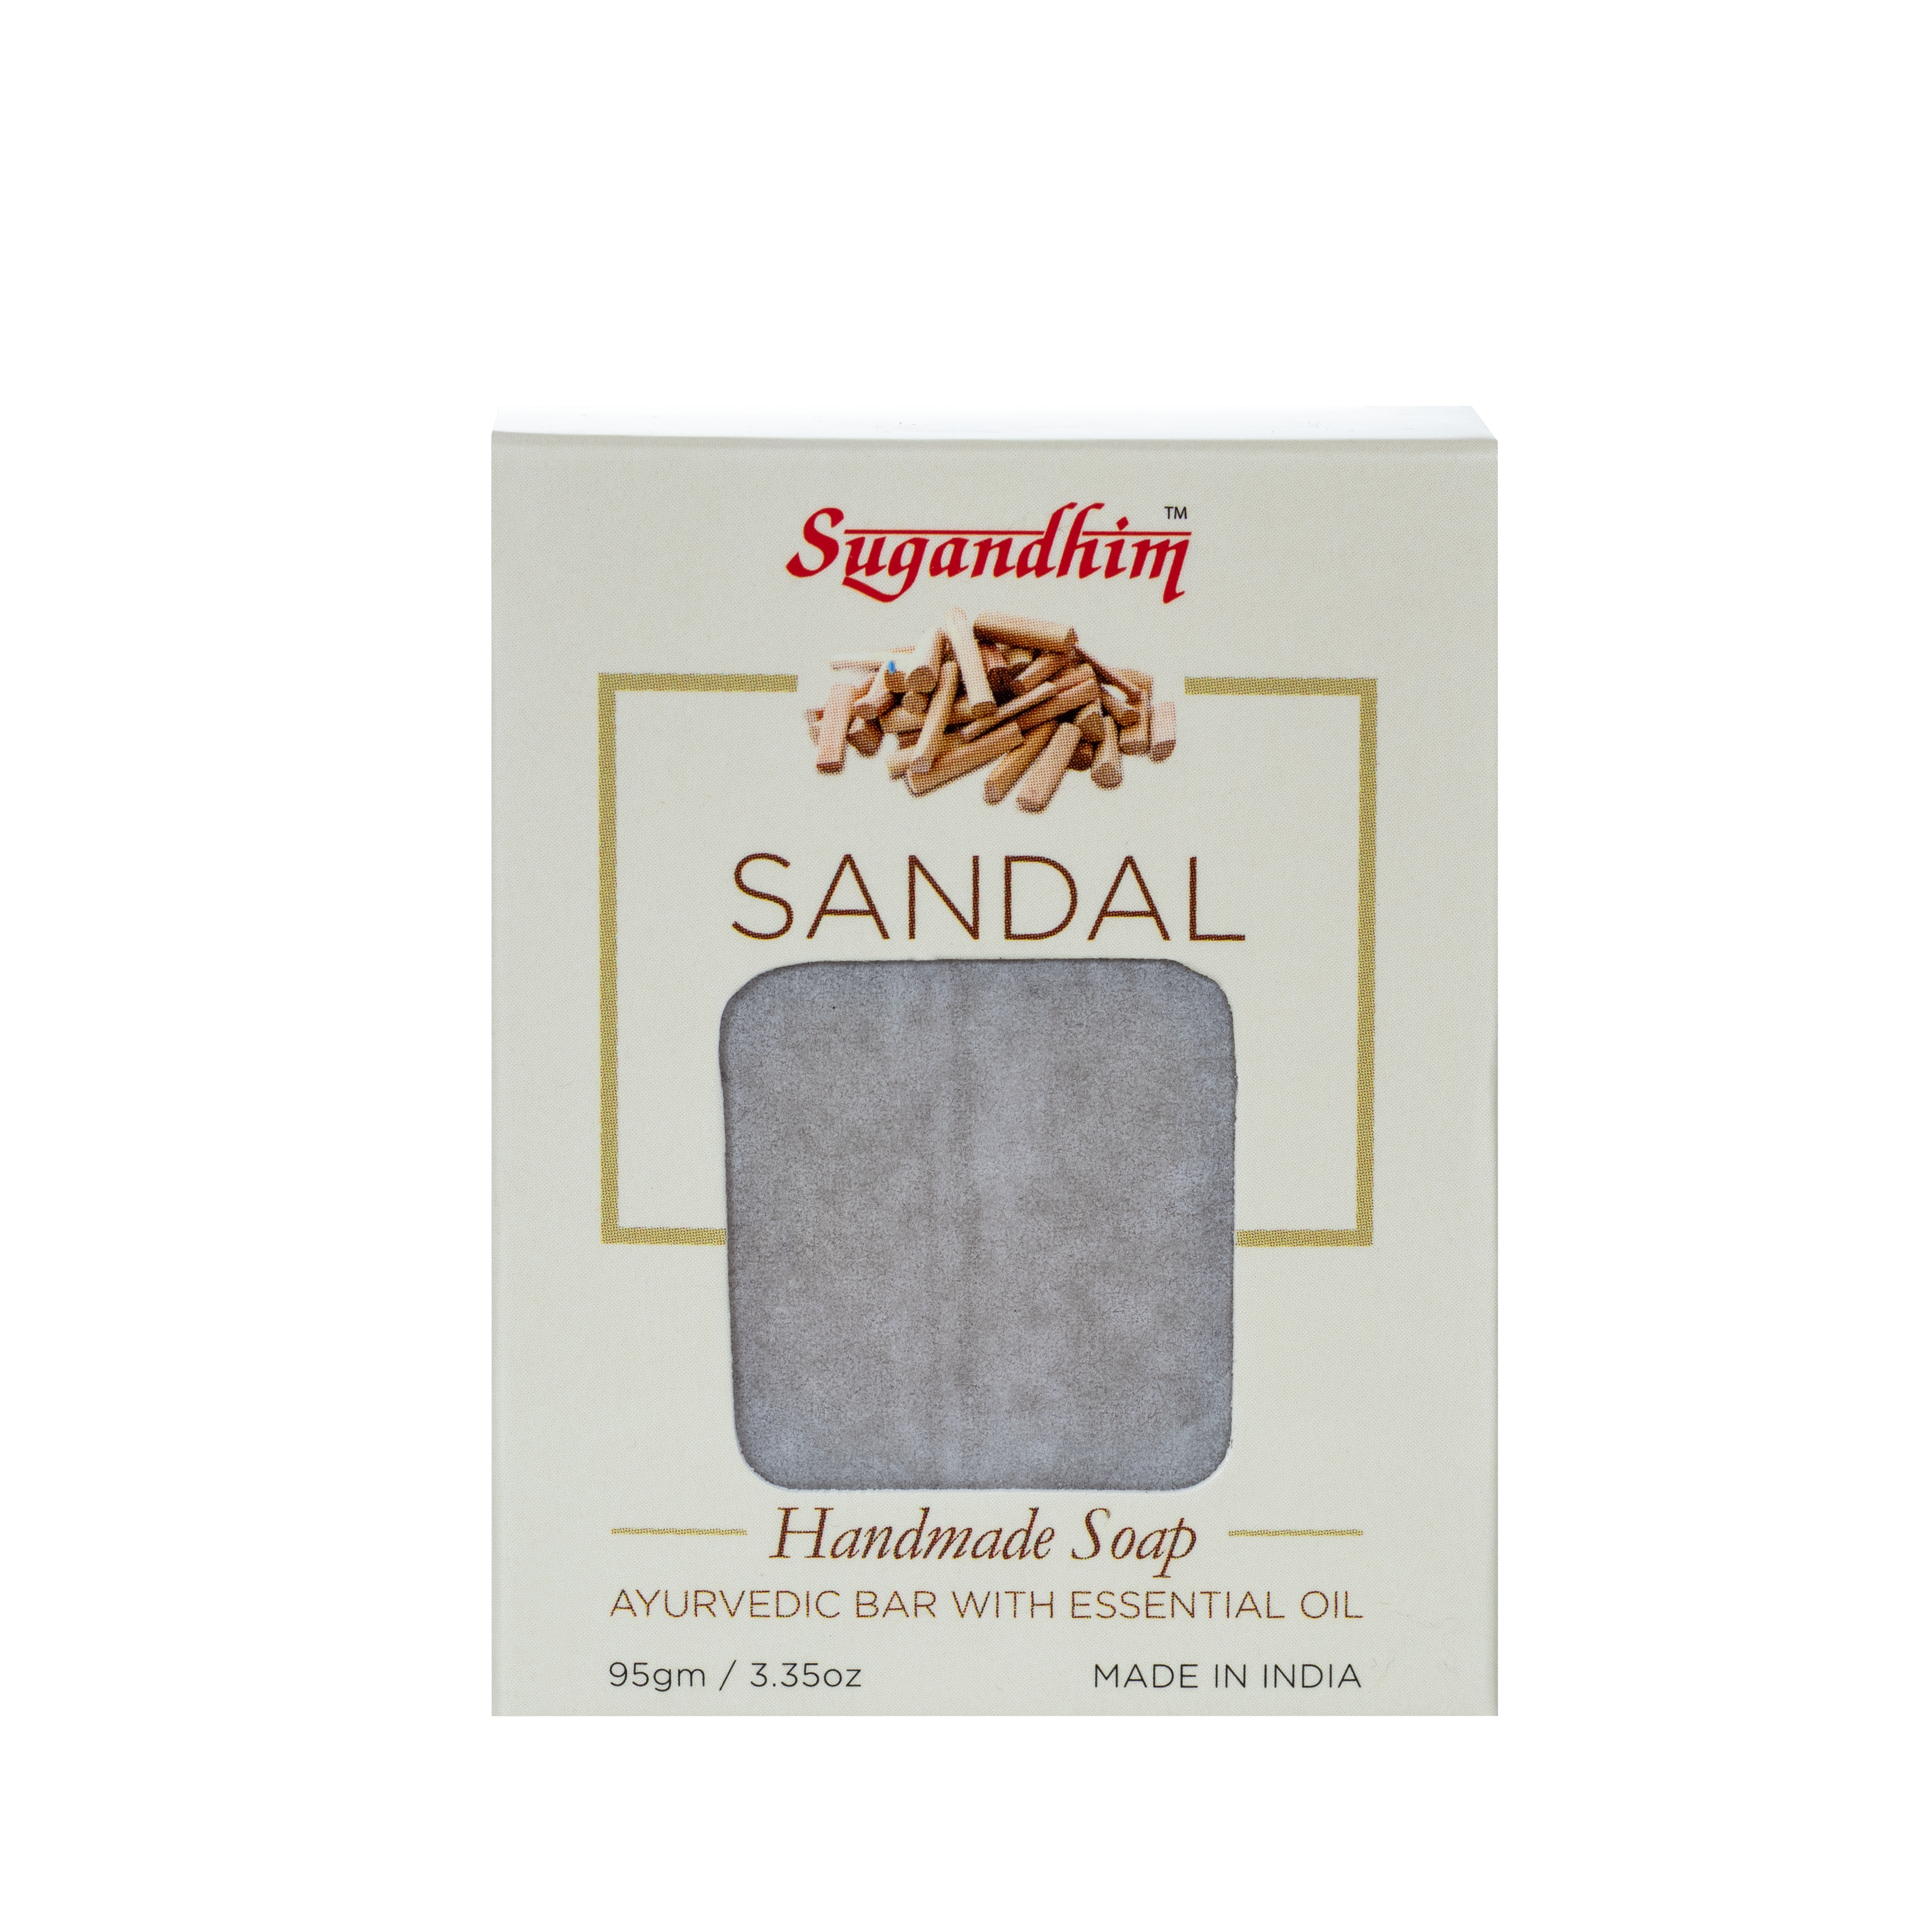 Handmade Soap Sandal - 95gms